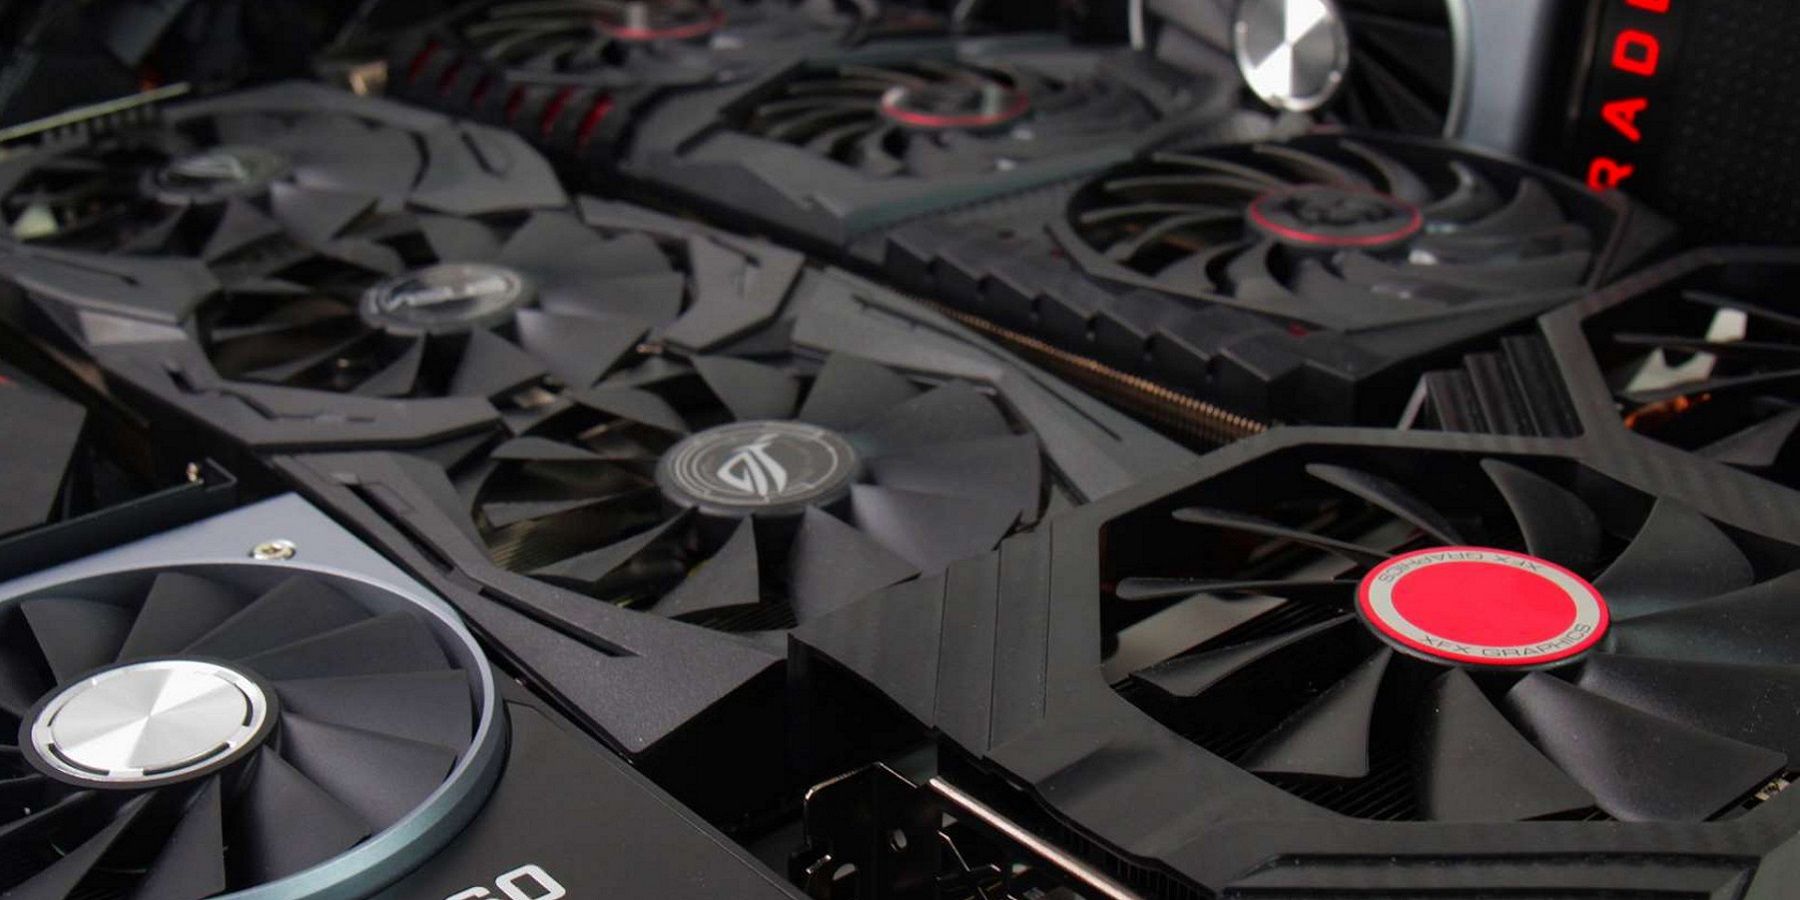 Фотография, показывающая серию видеокарт AMD и Nvidia.